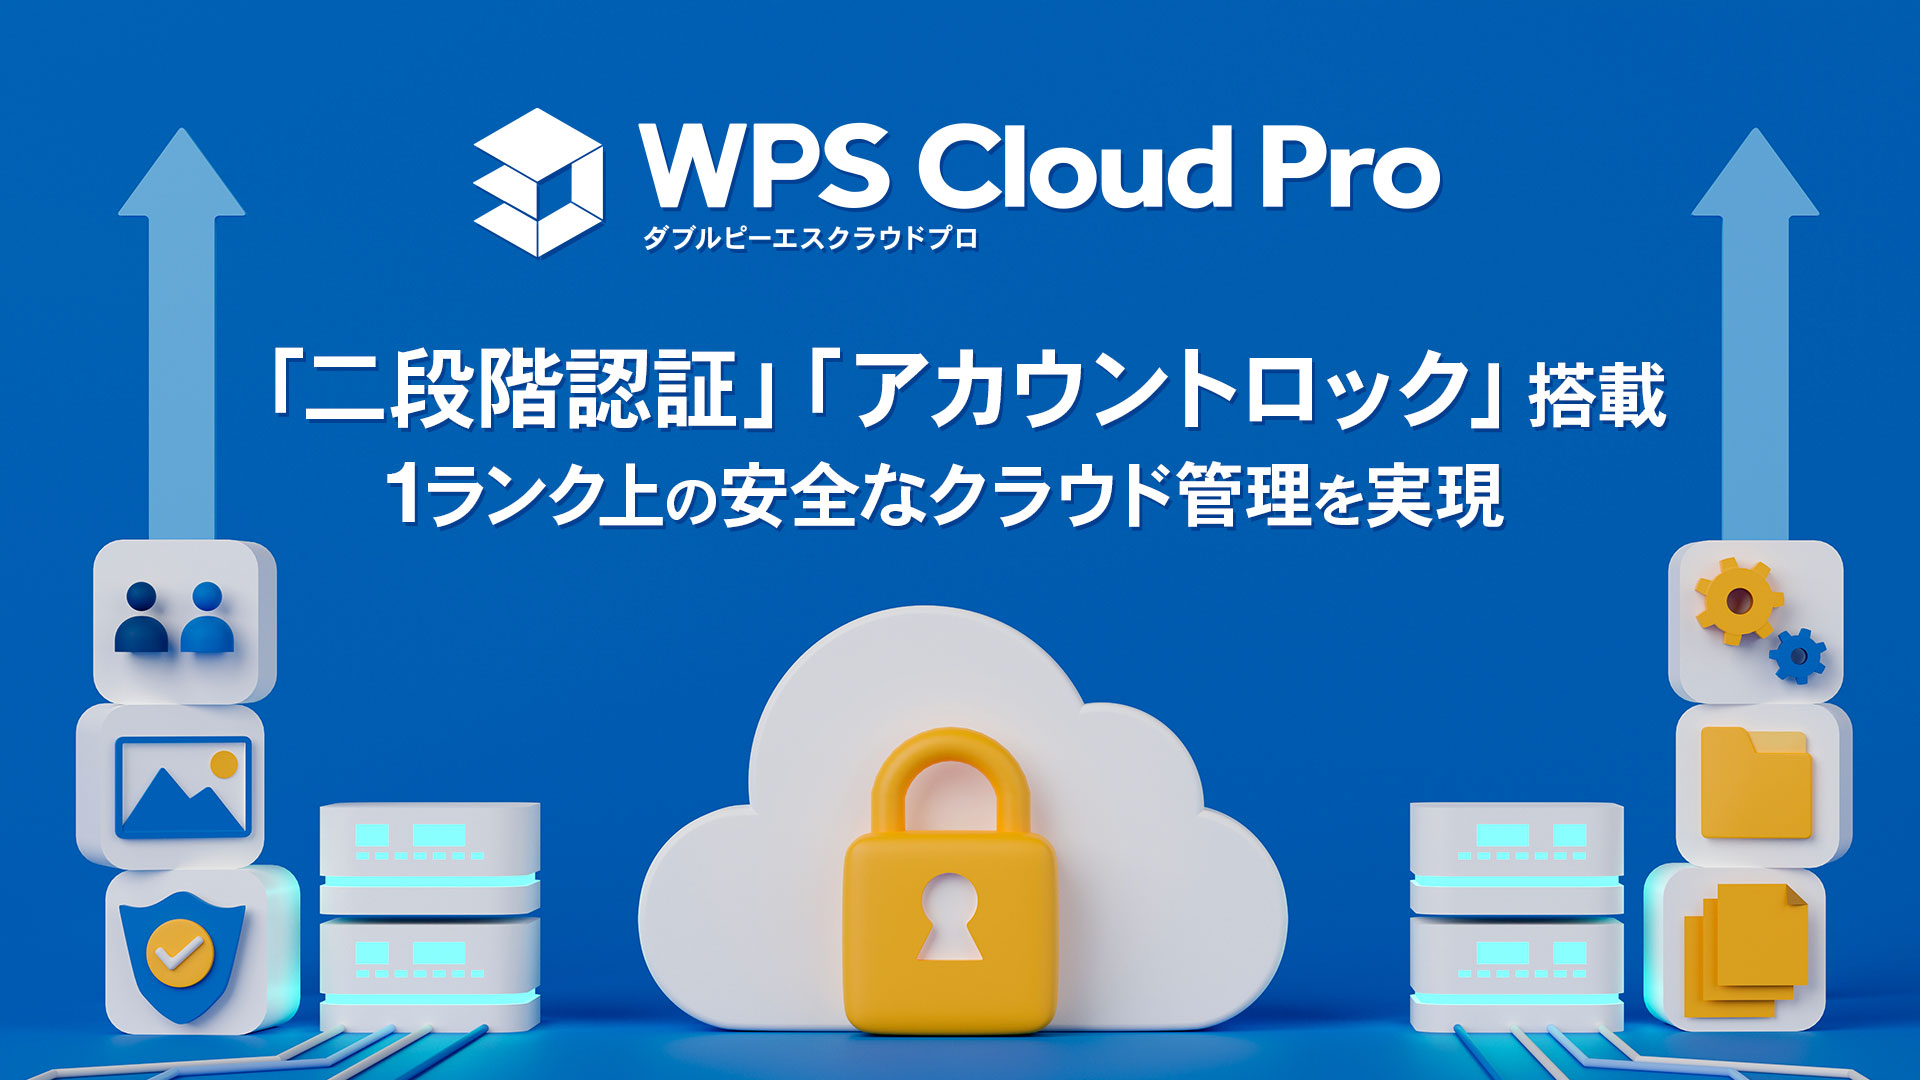 法人向けクラウド型オフィスソフト「WPS Cloud Pro」に「二段階認証」「アカウントロック機能」を搭載し、セキュリ